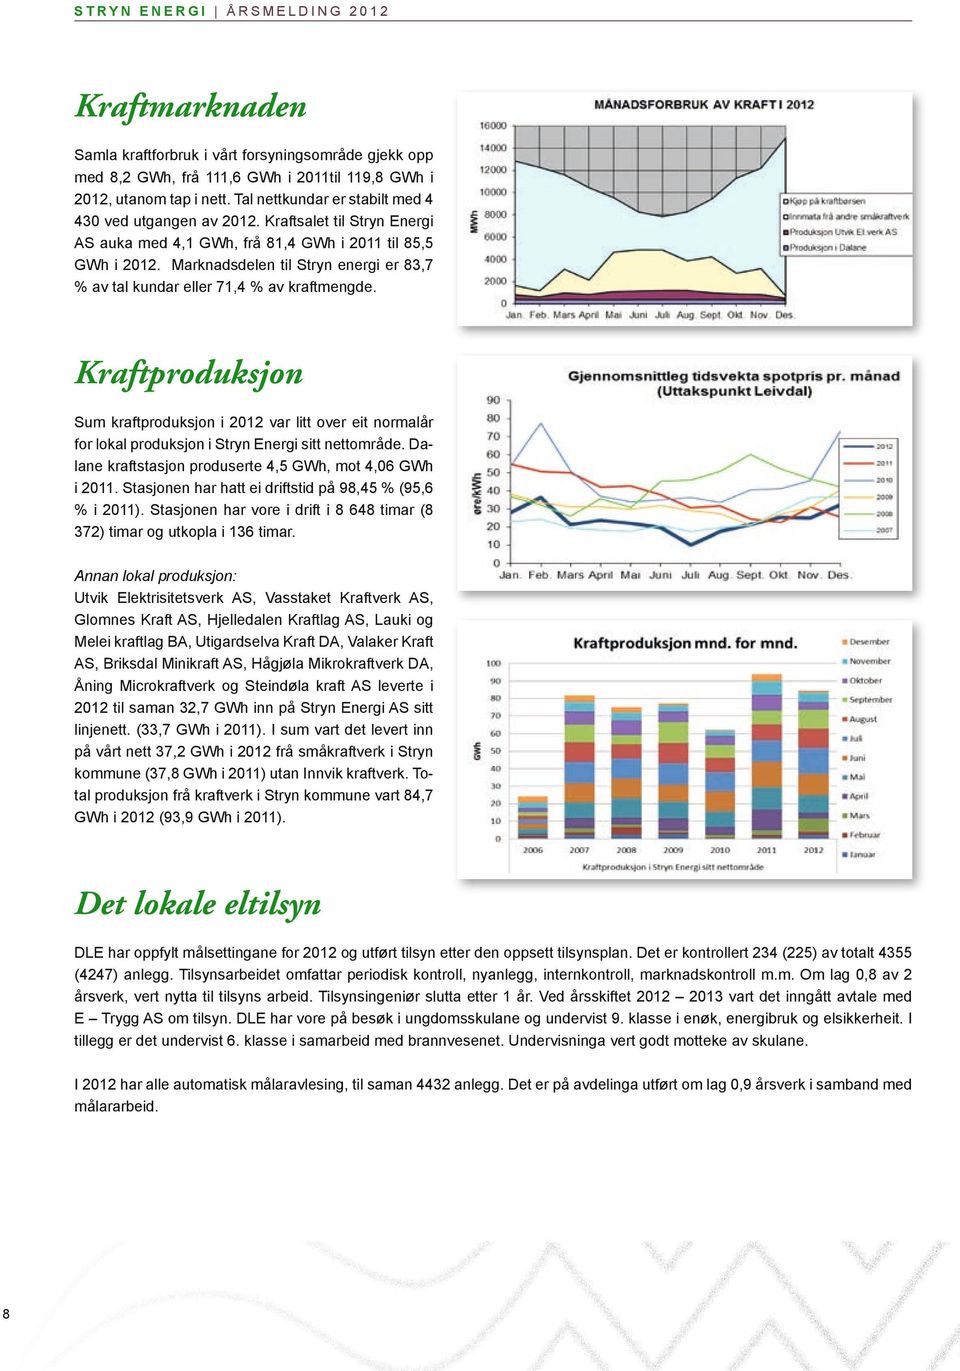 Marknadsdelen til Stryn energi er 83,7 % av tal kundar eller 71,4 % av kraftmengde.